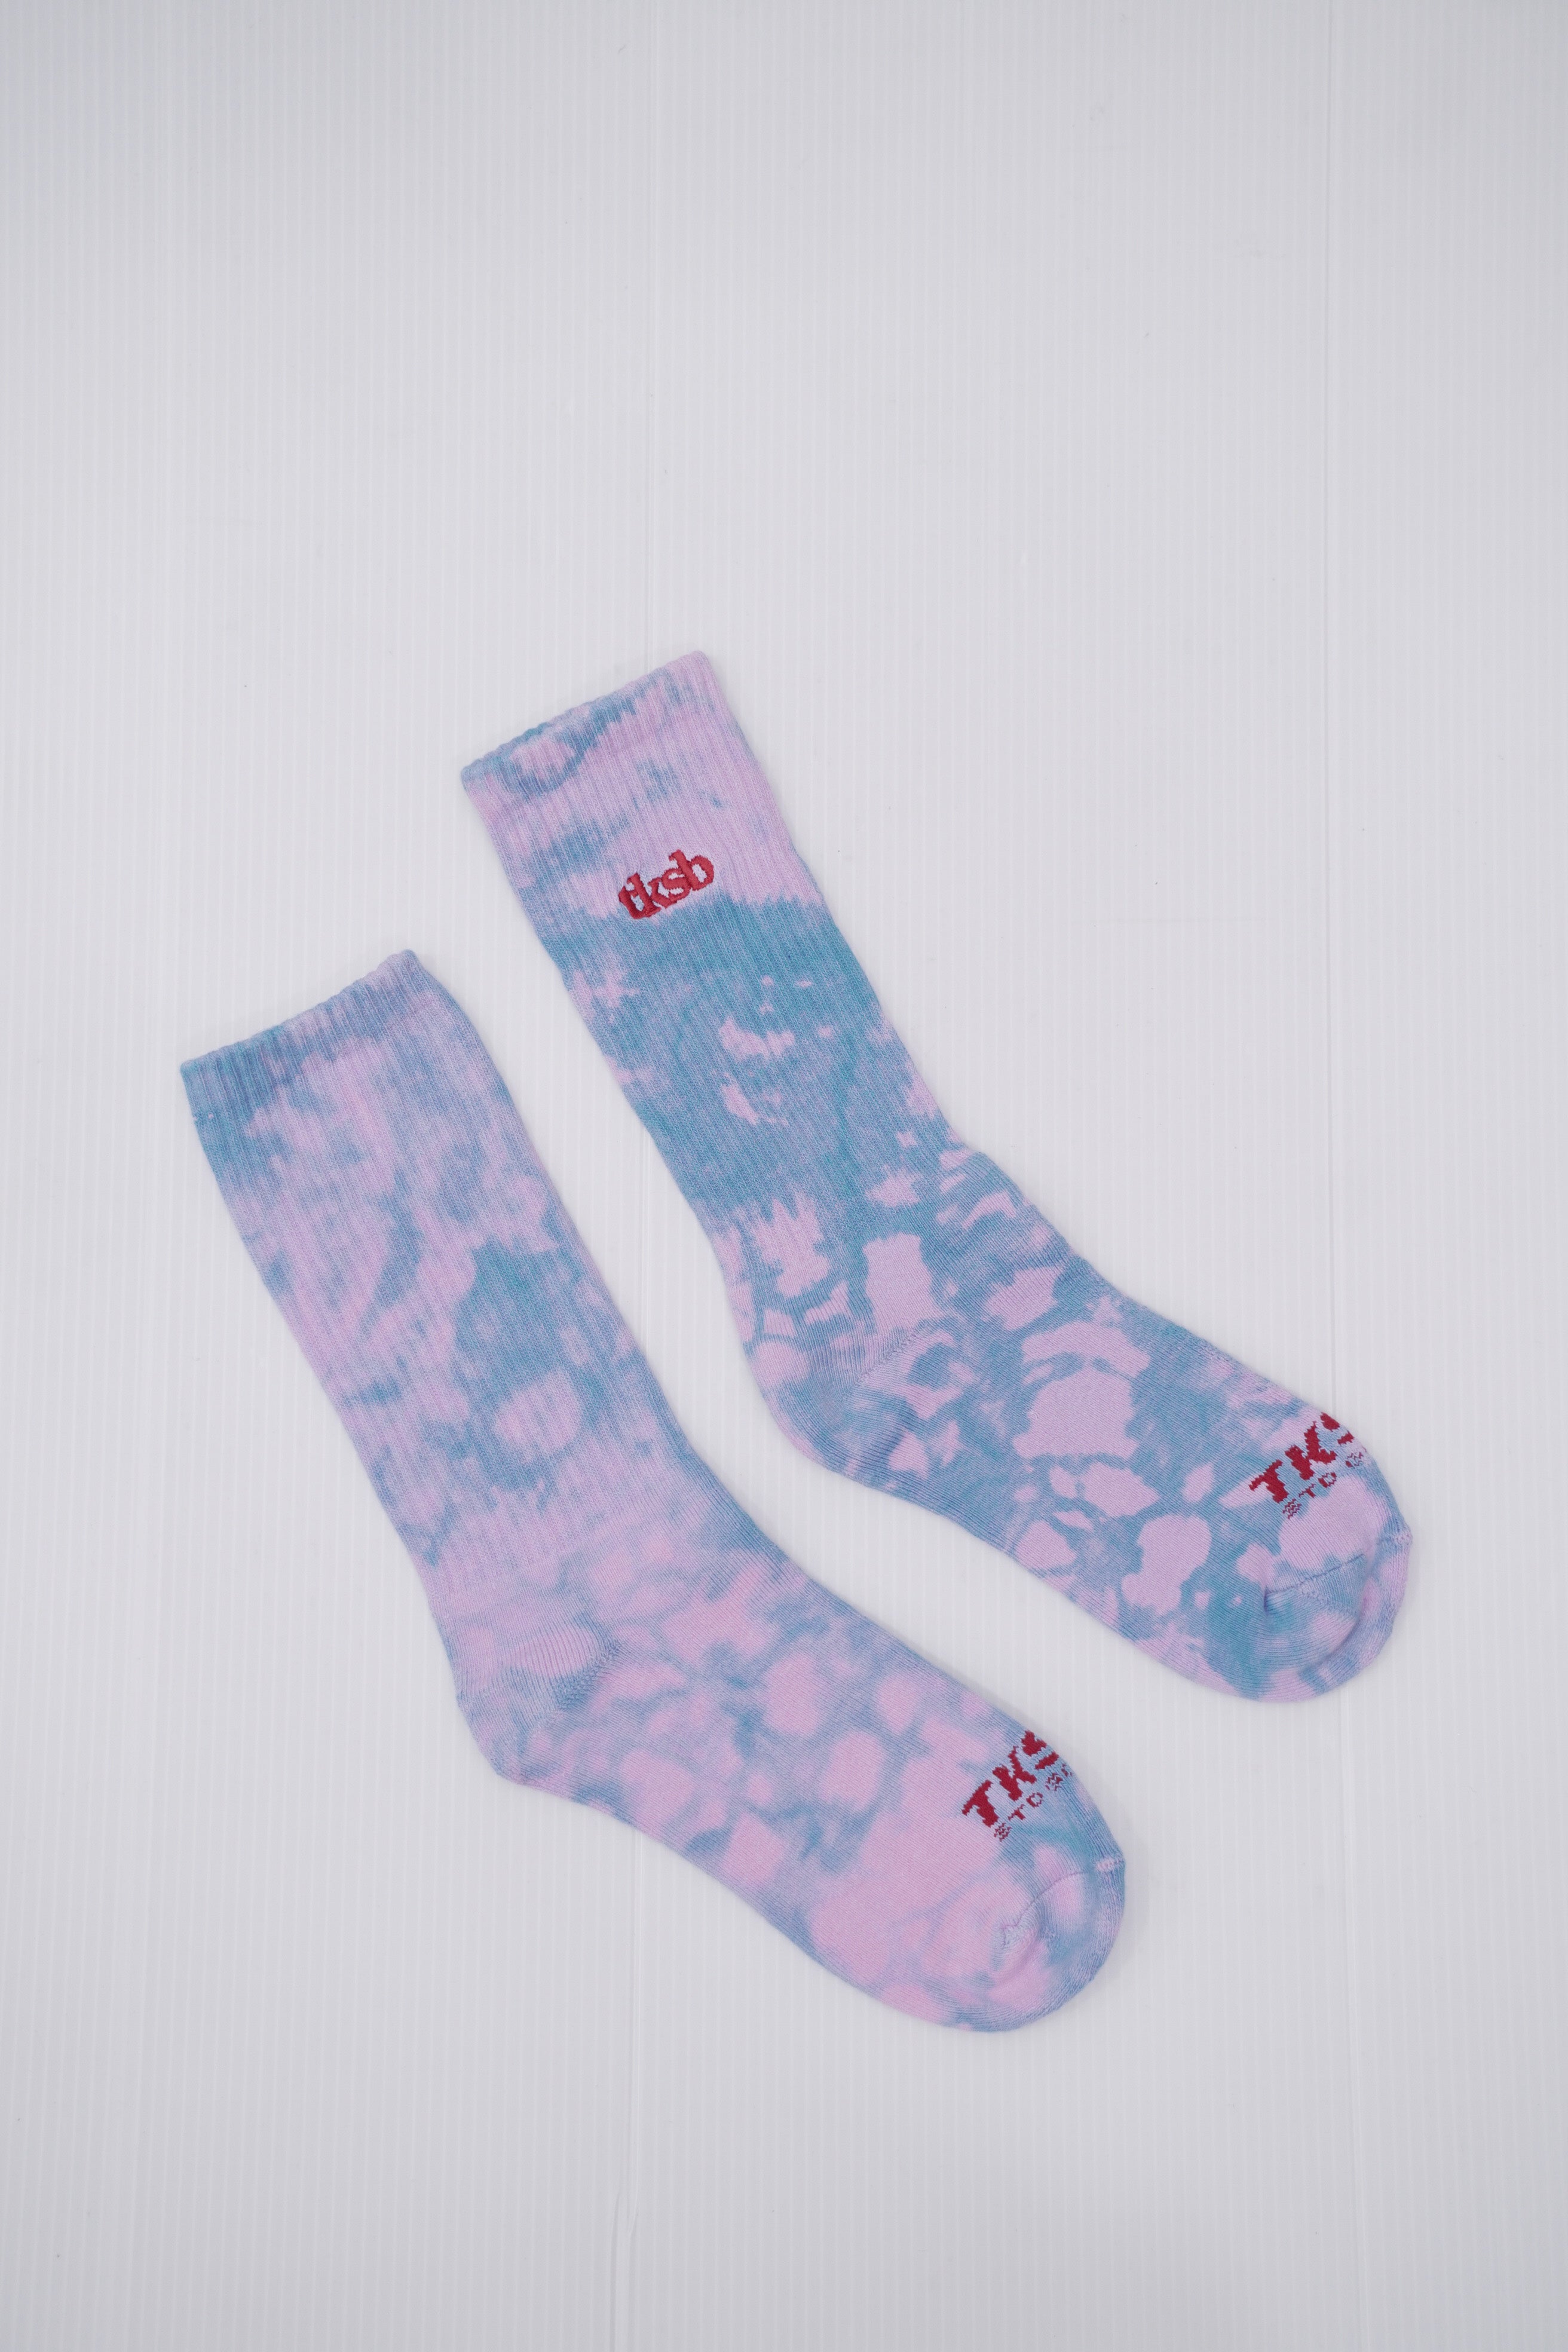 TKSB - Tie Dye Soda Blue/Pink Socks